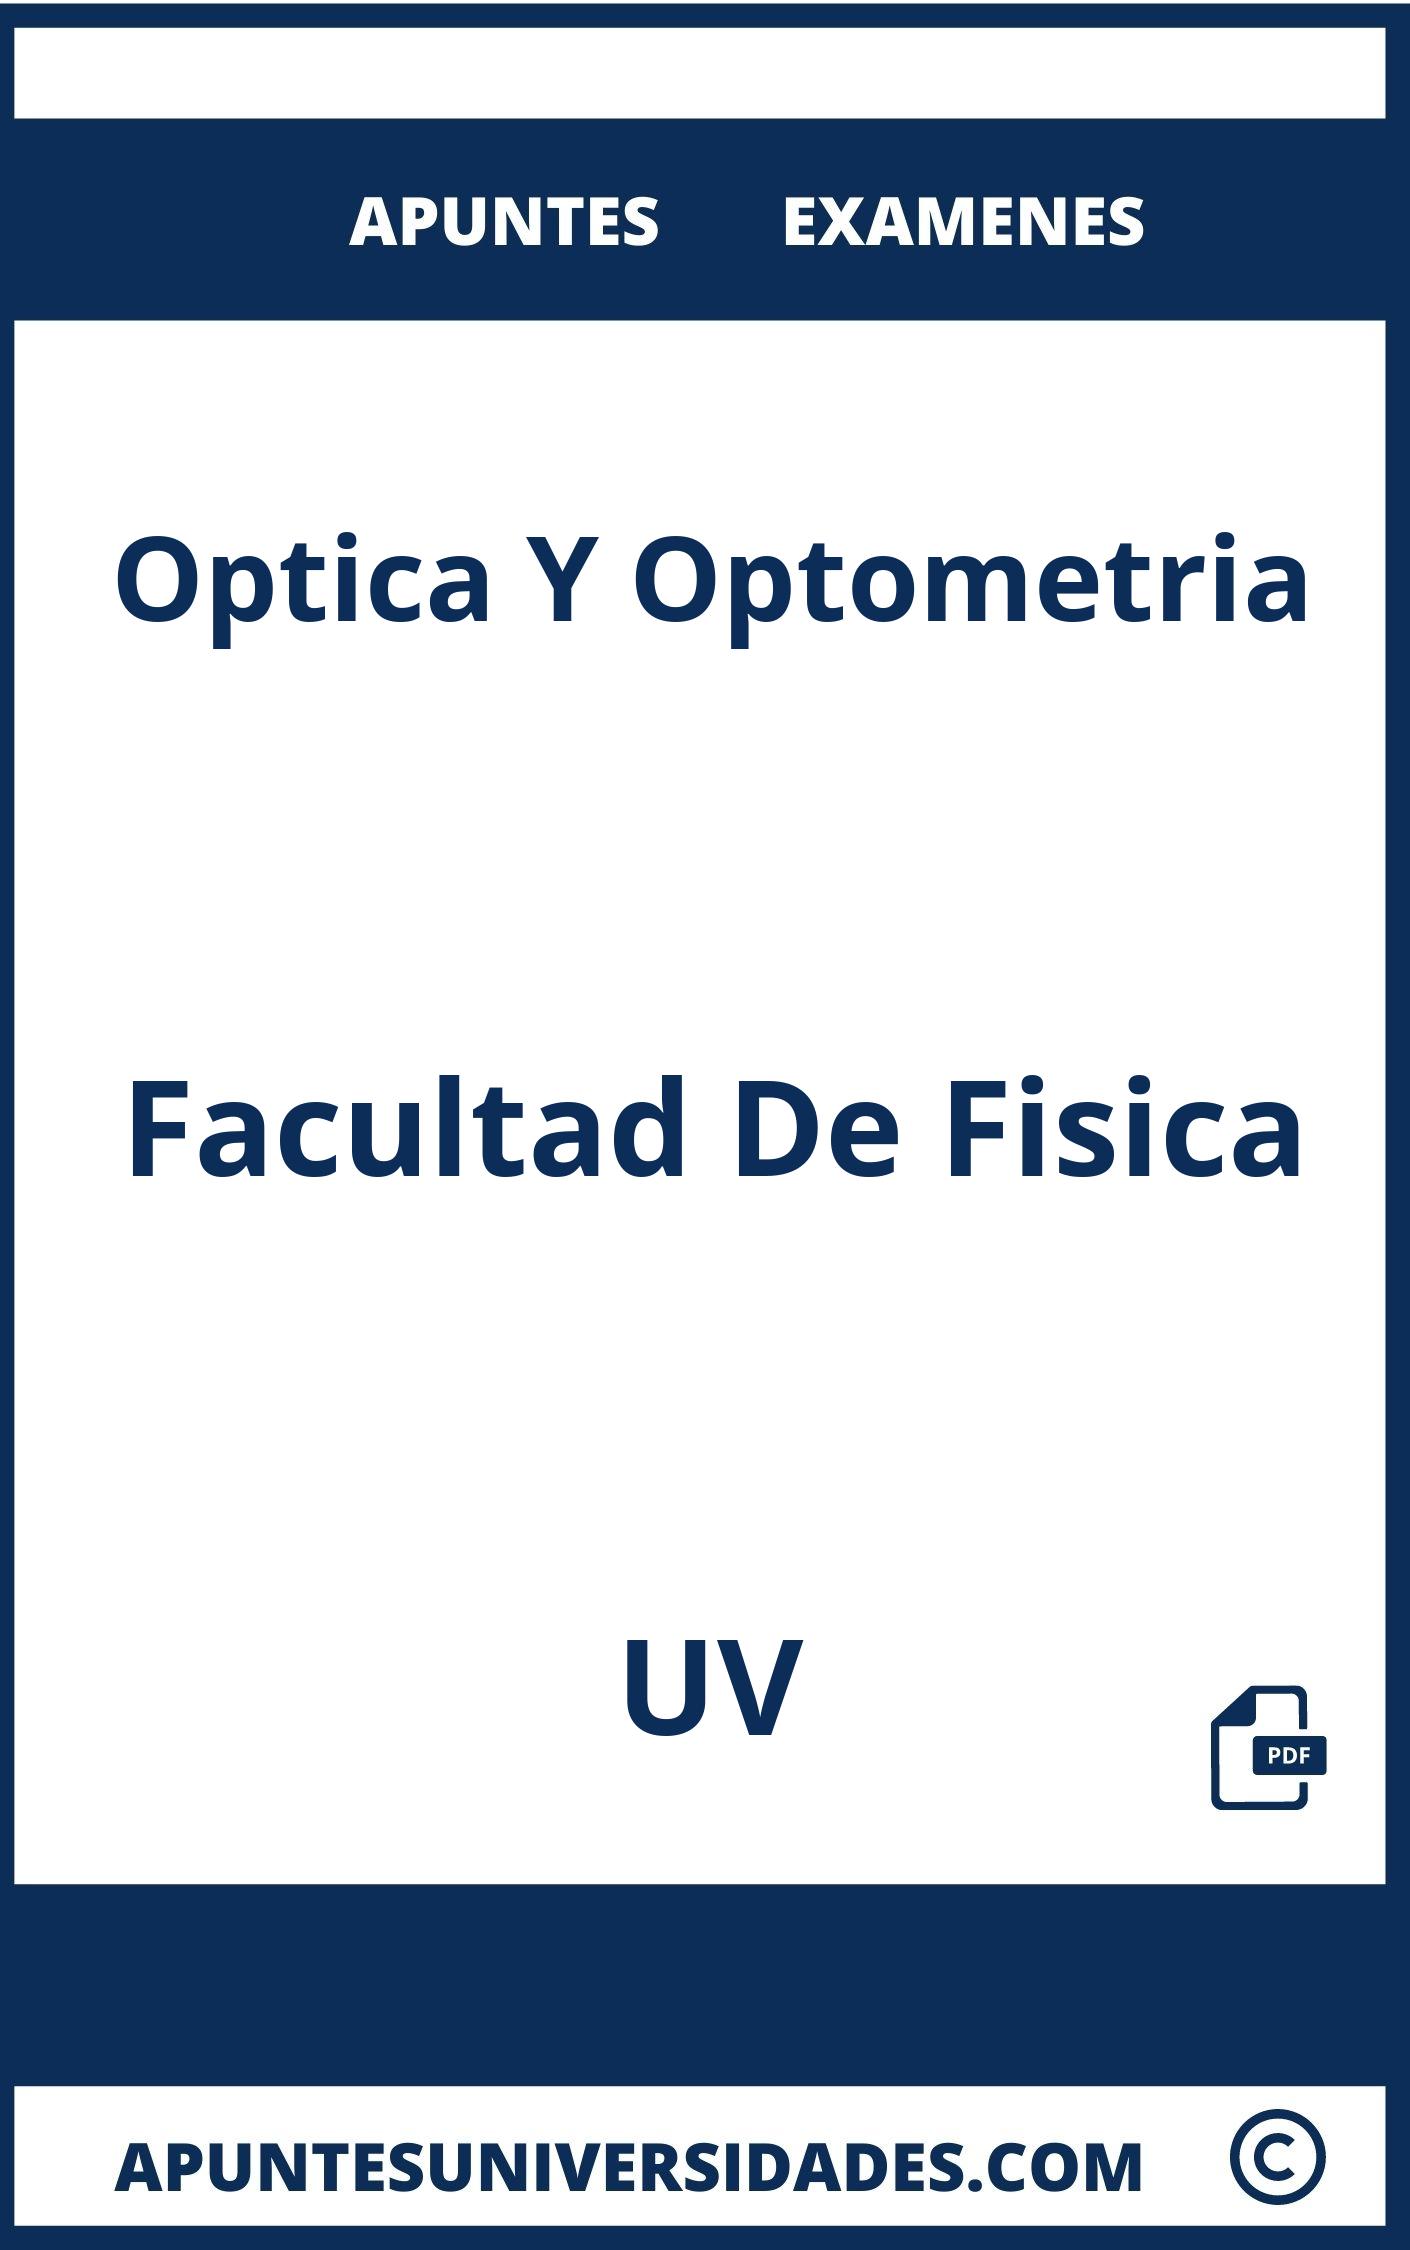 Apuntes Examenes Optica Y Optometria UV